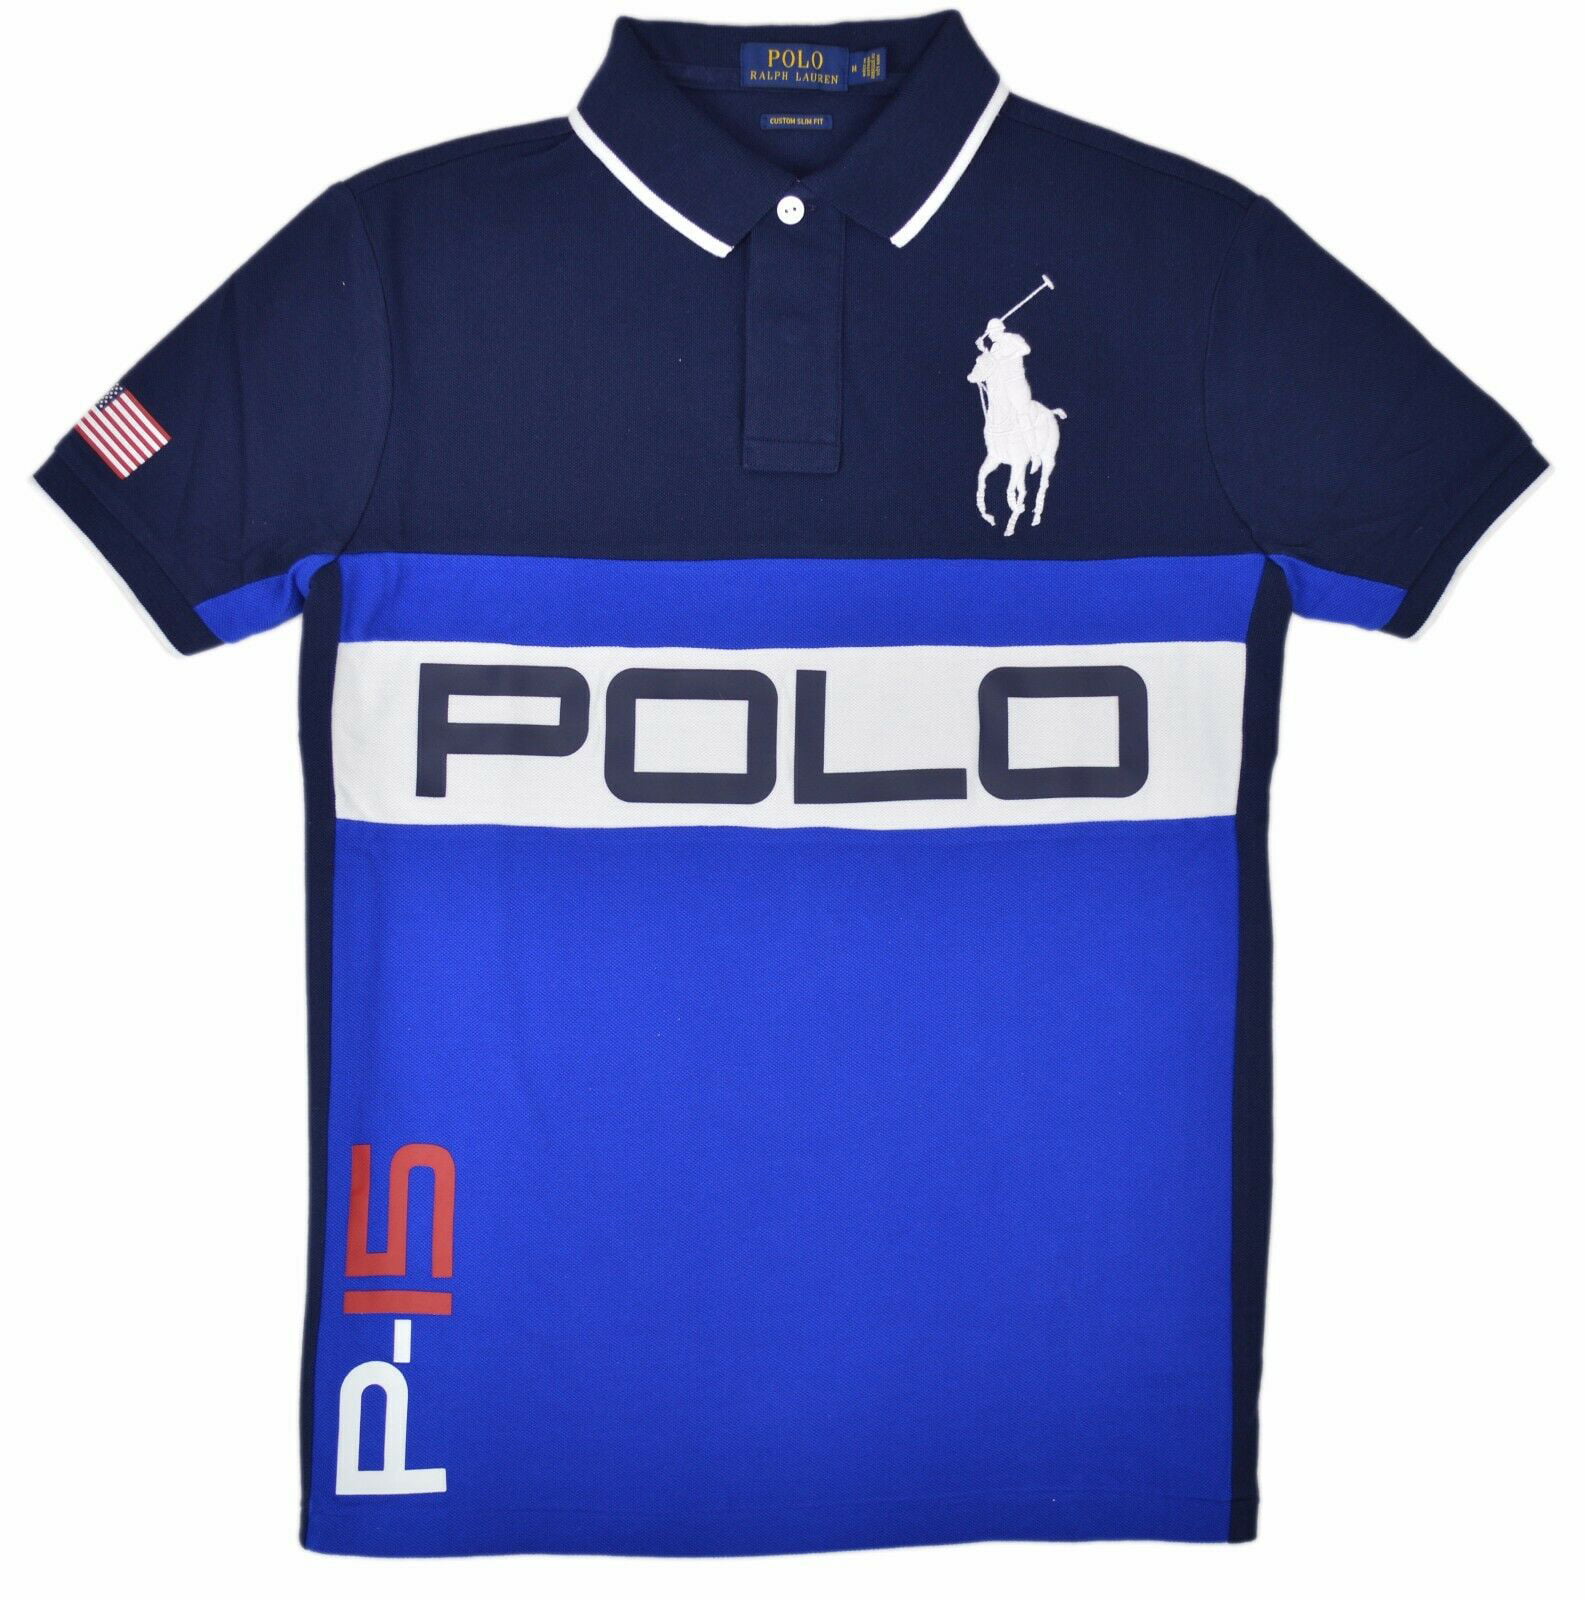 Polo Ralph Lauren - New Polo Ralph Lauren Men's Custom Slim Fit Big